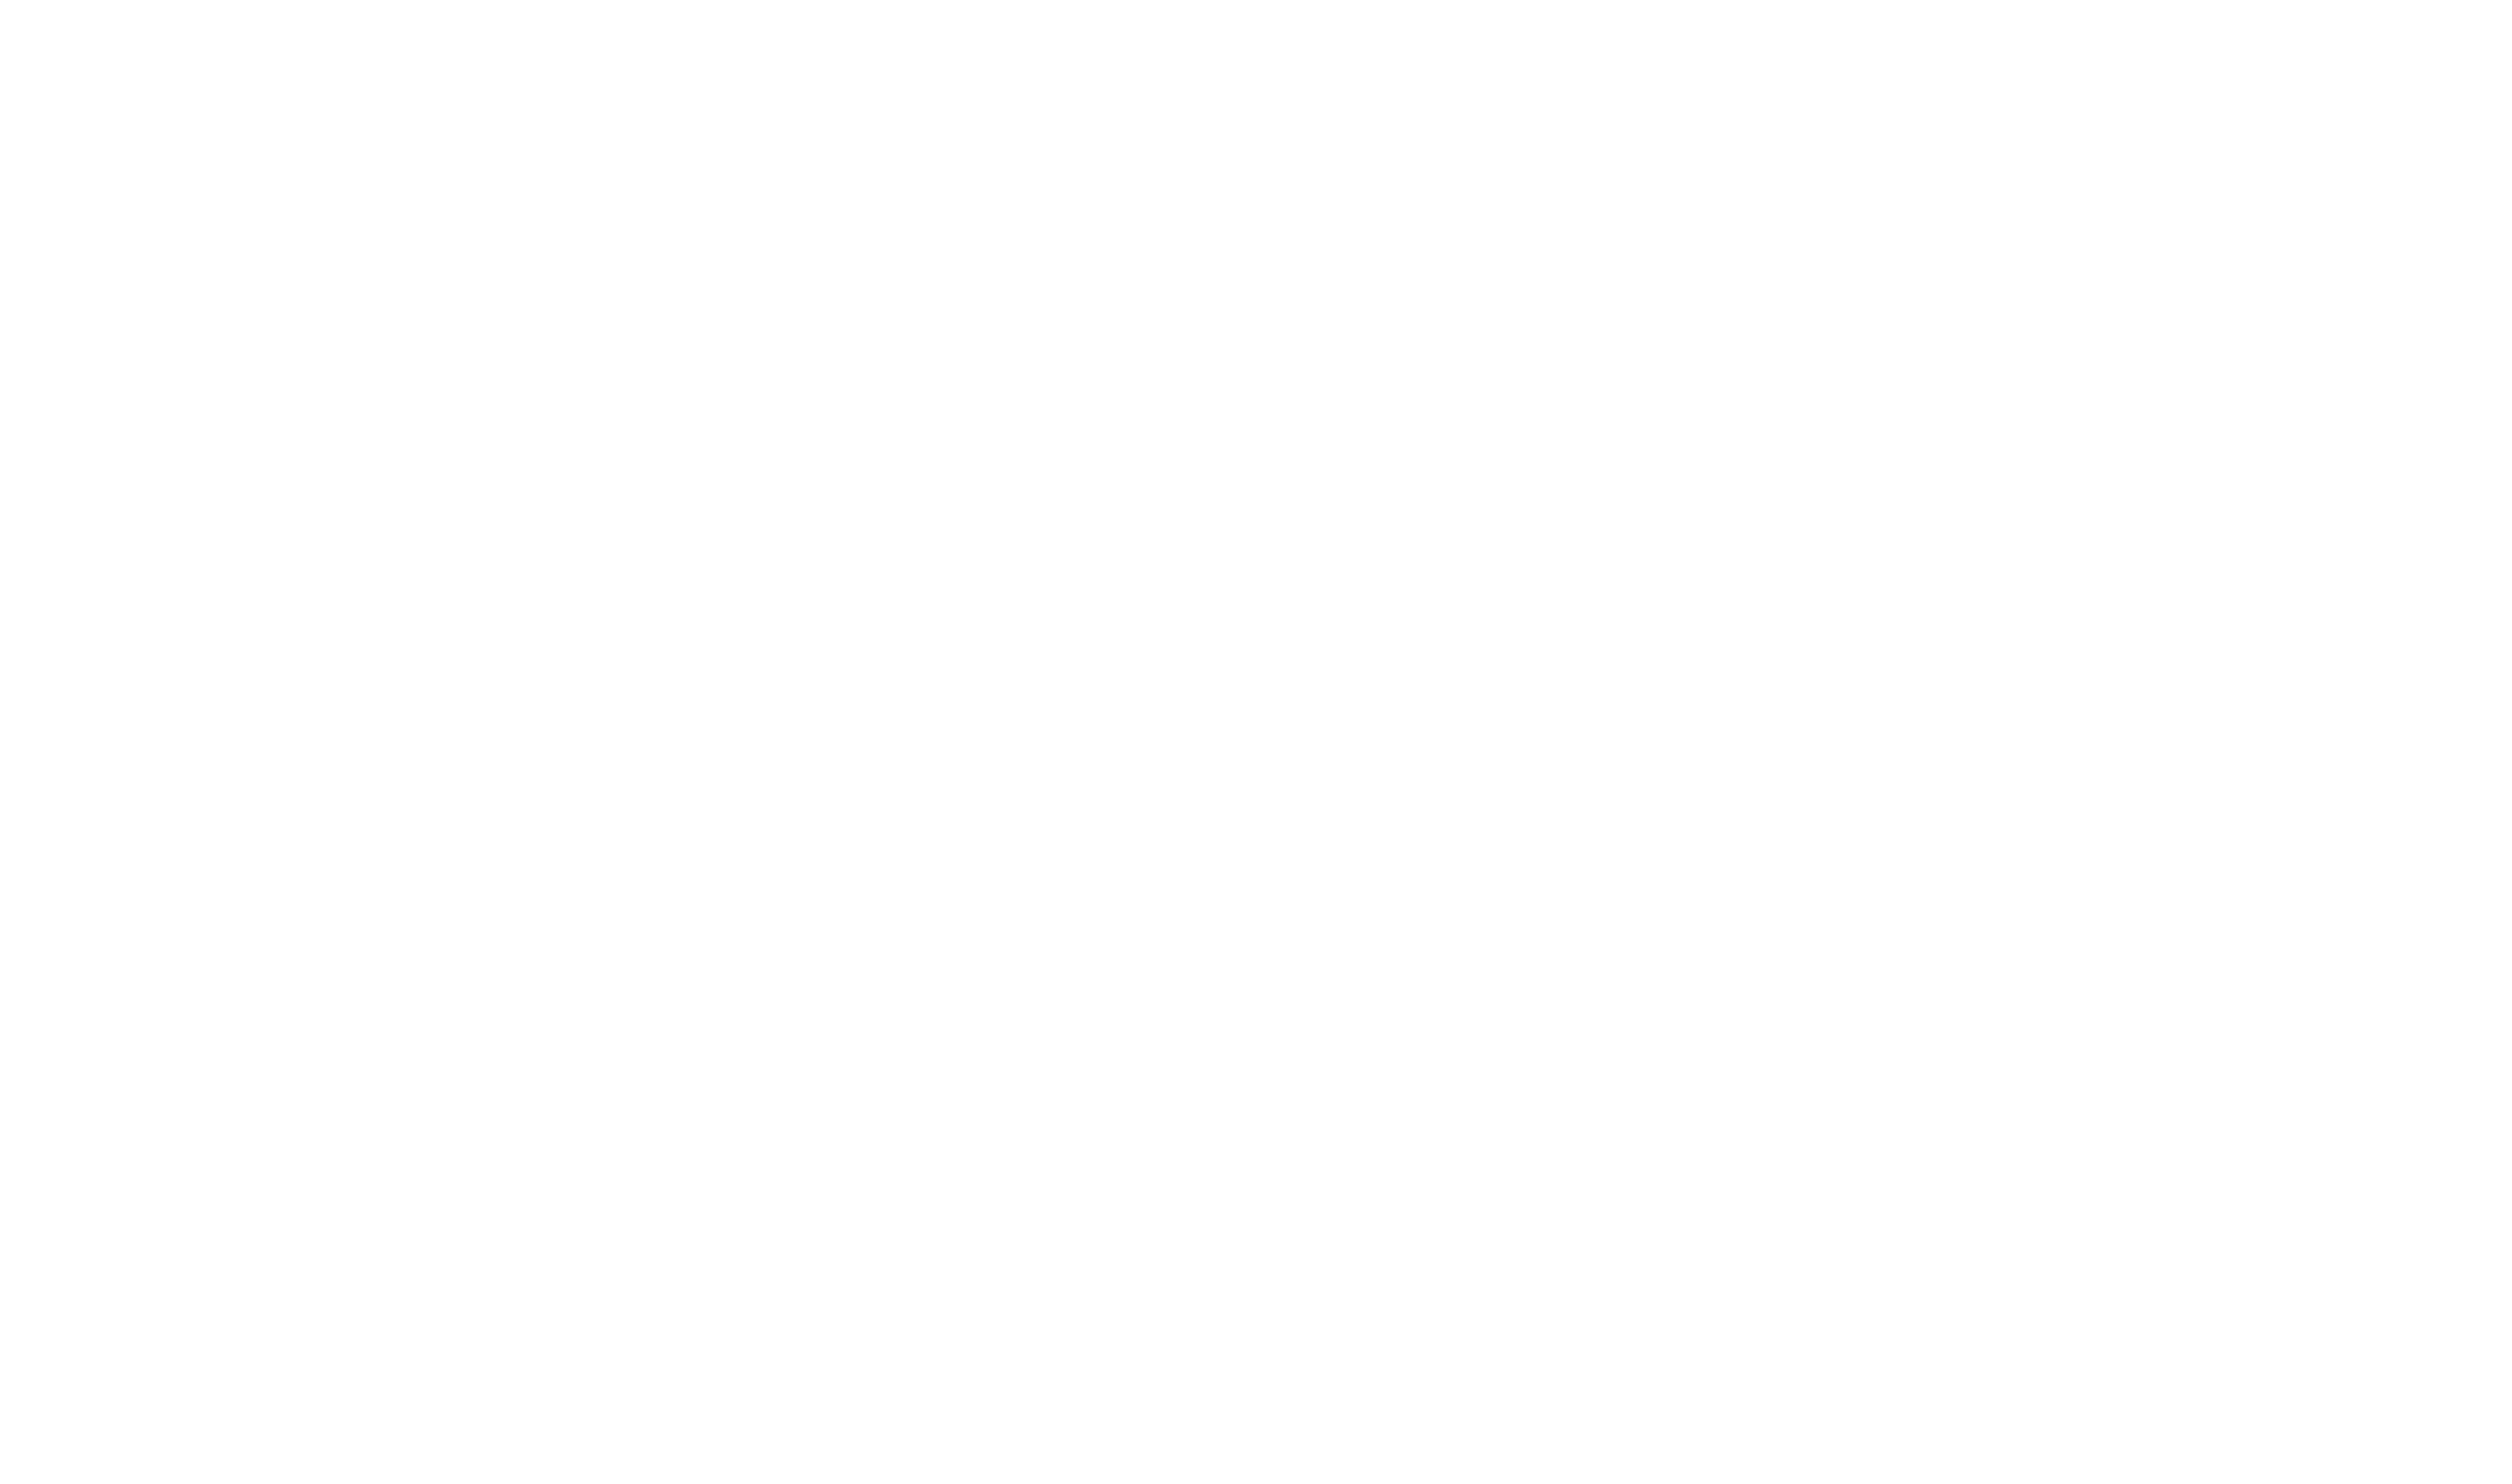 Dennis Koeppl